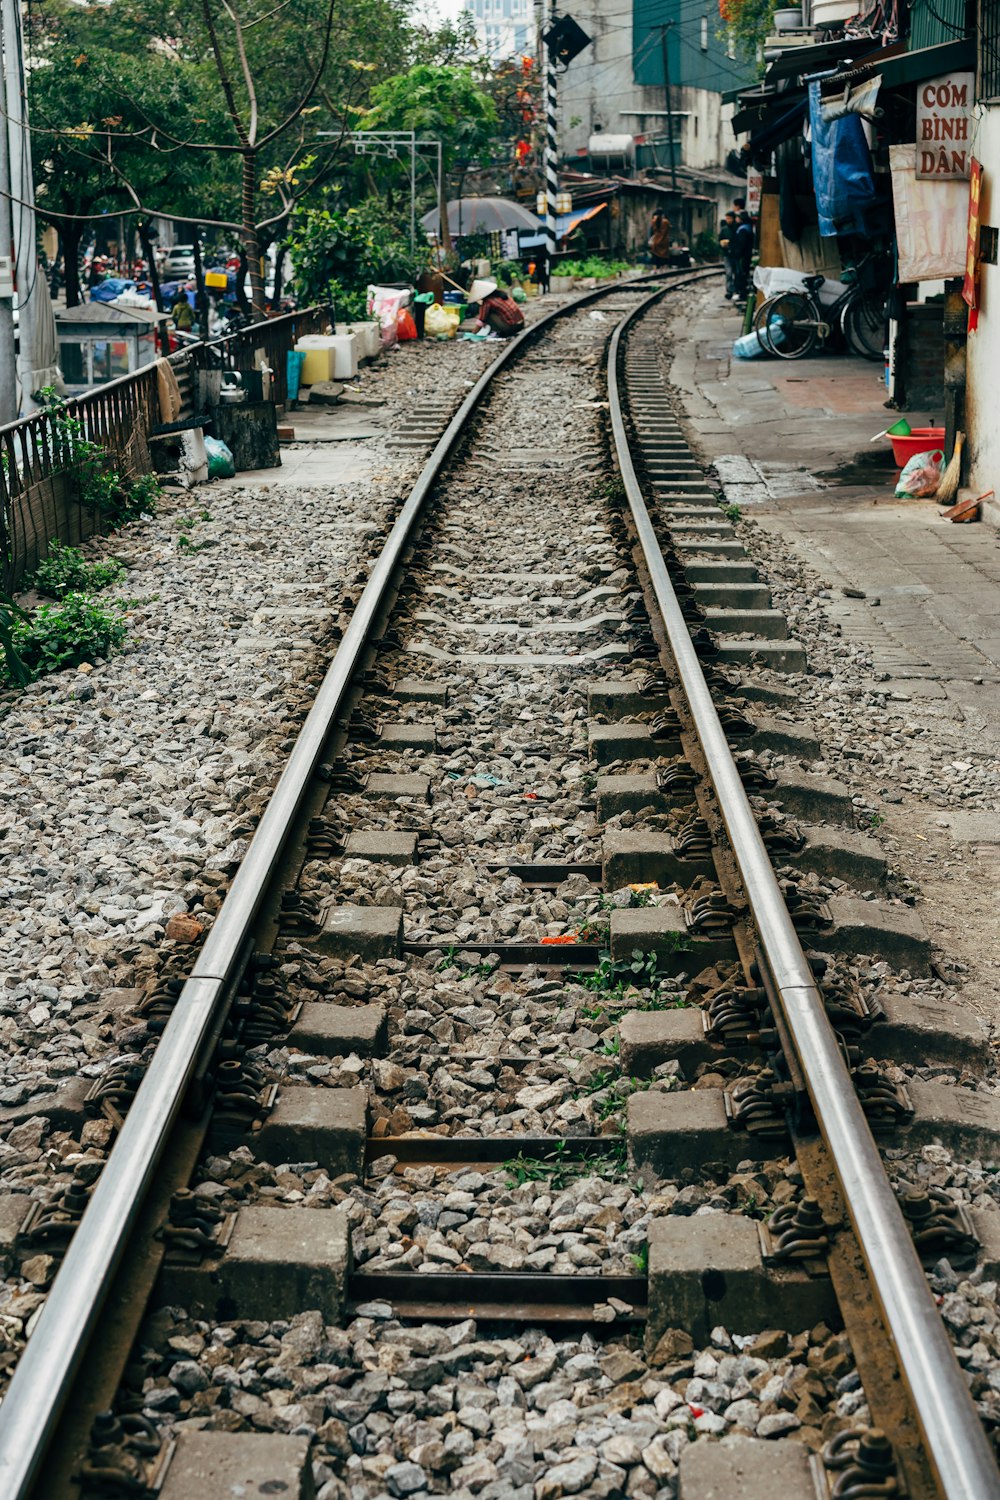 a train track running through a small town